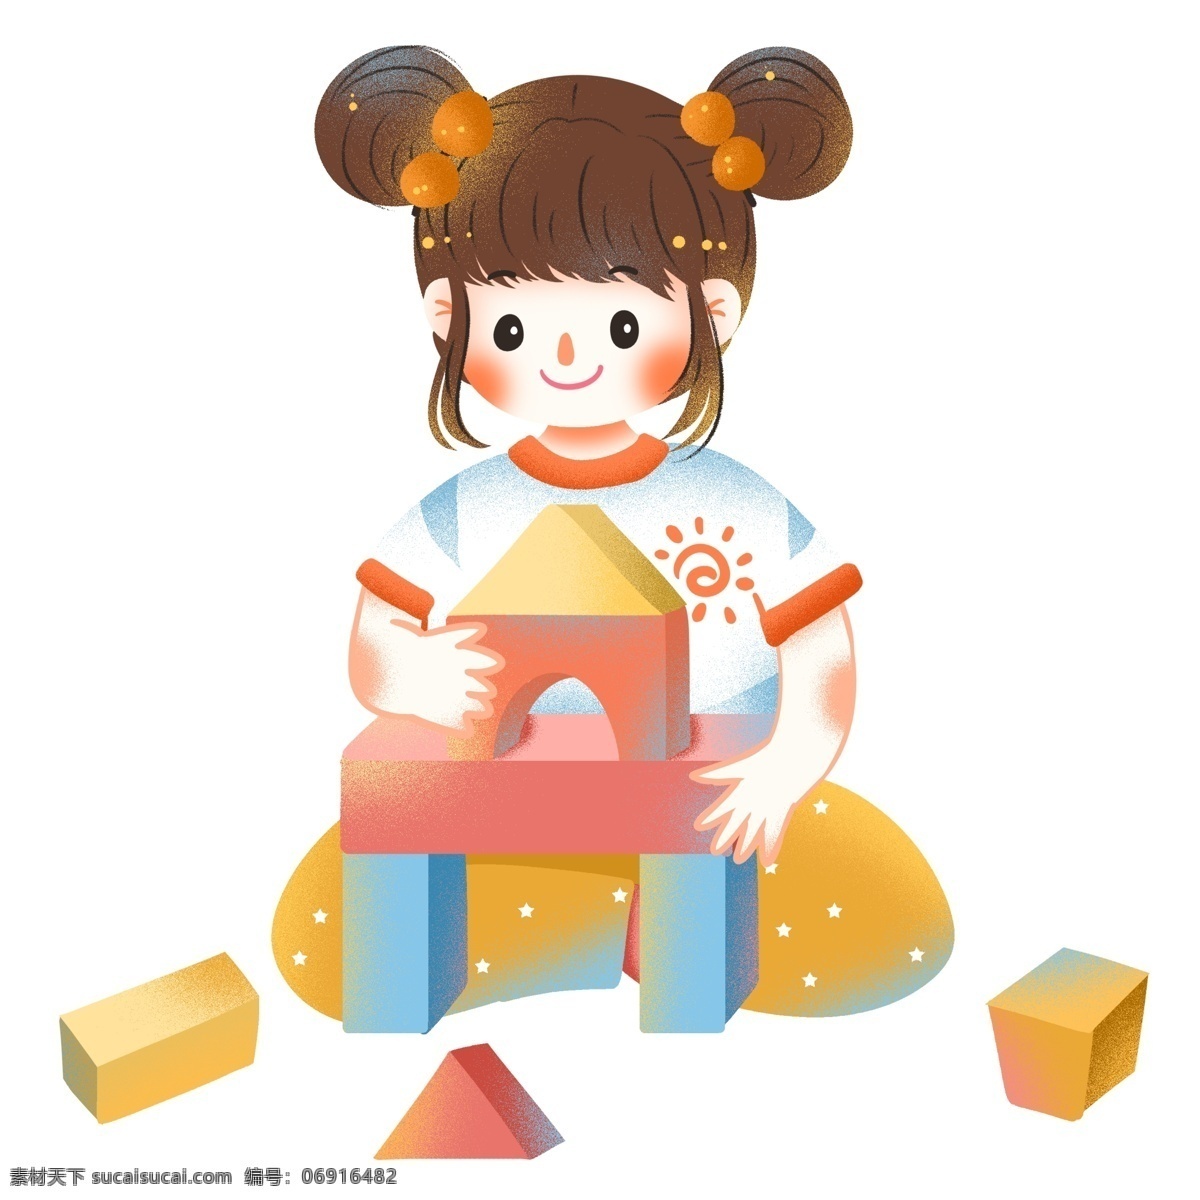 卡通 可爱 玩 积木 女孩子 女孩 插画 人物 玩具 儿童节 节日